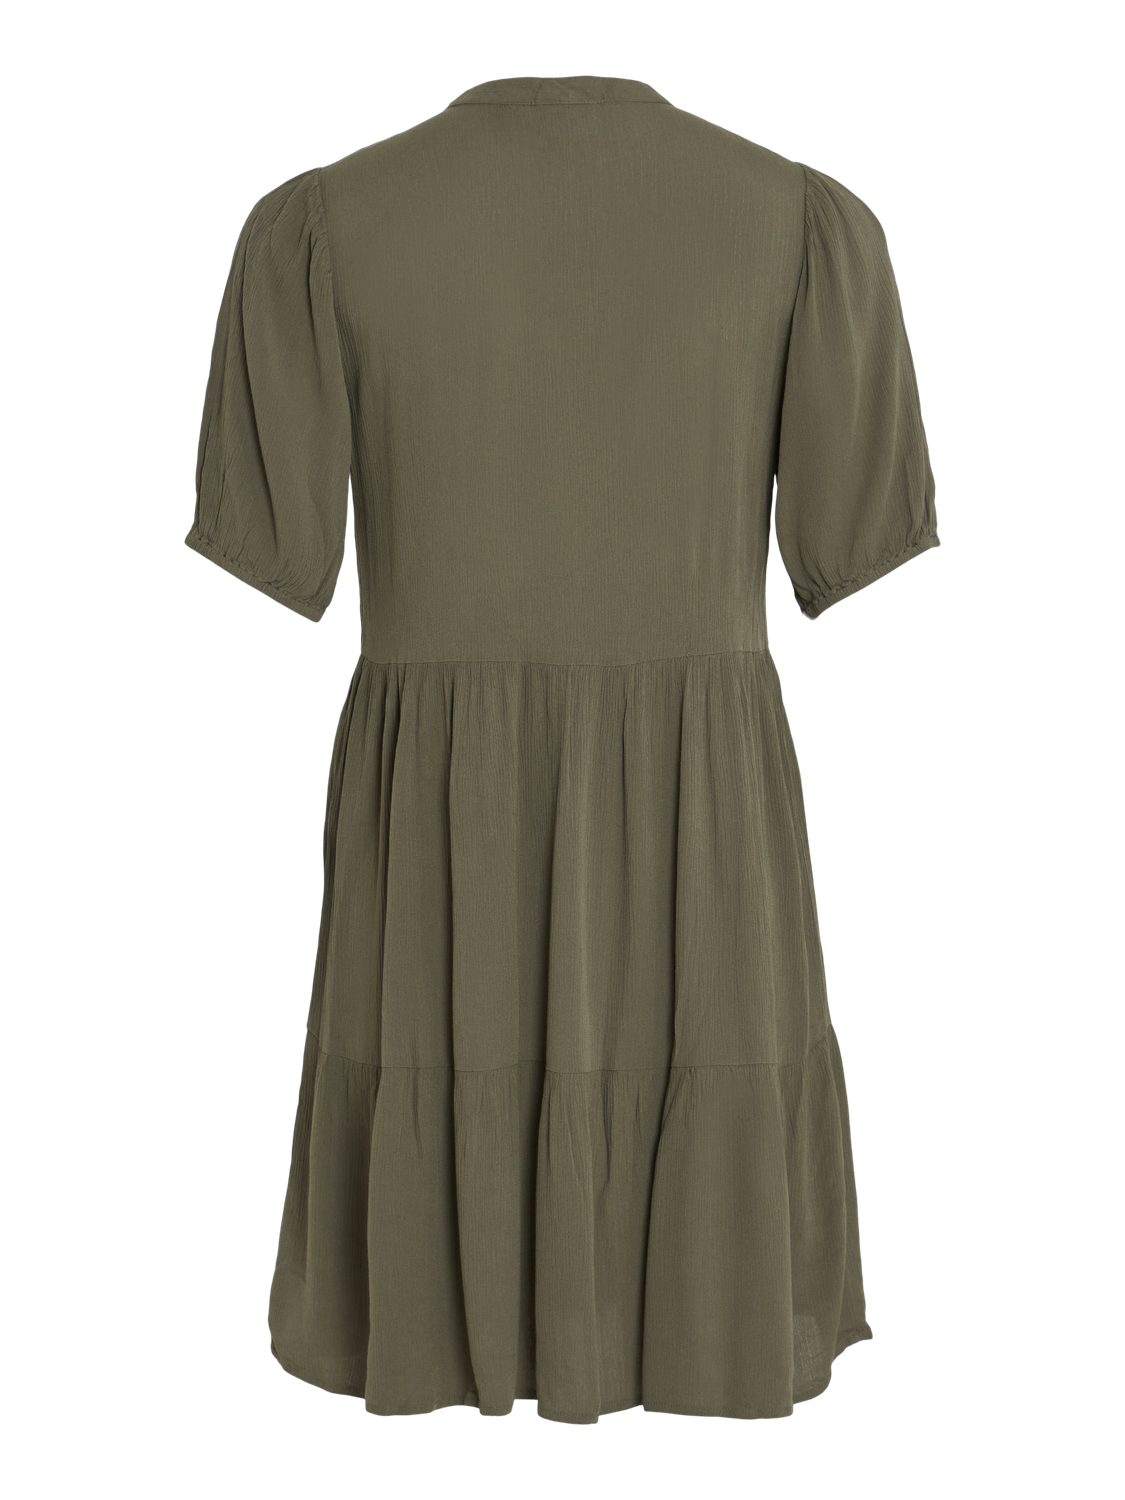 VILOPEZ Dress - Dusty Olive